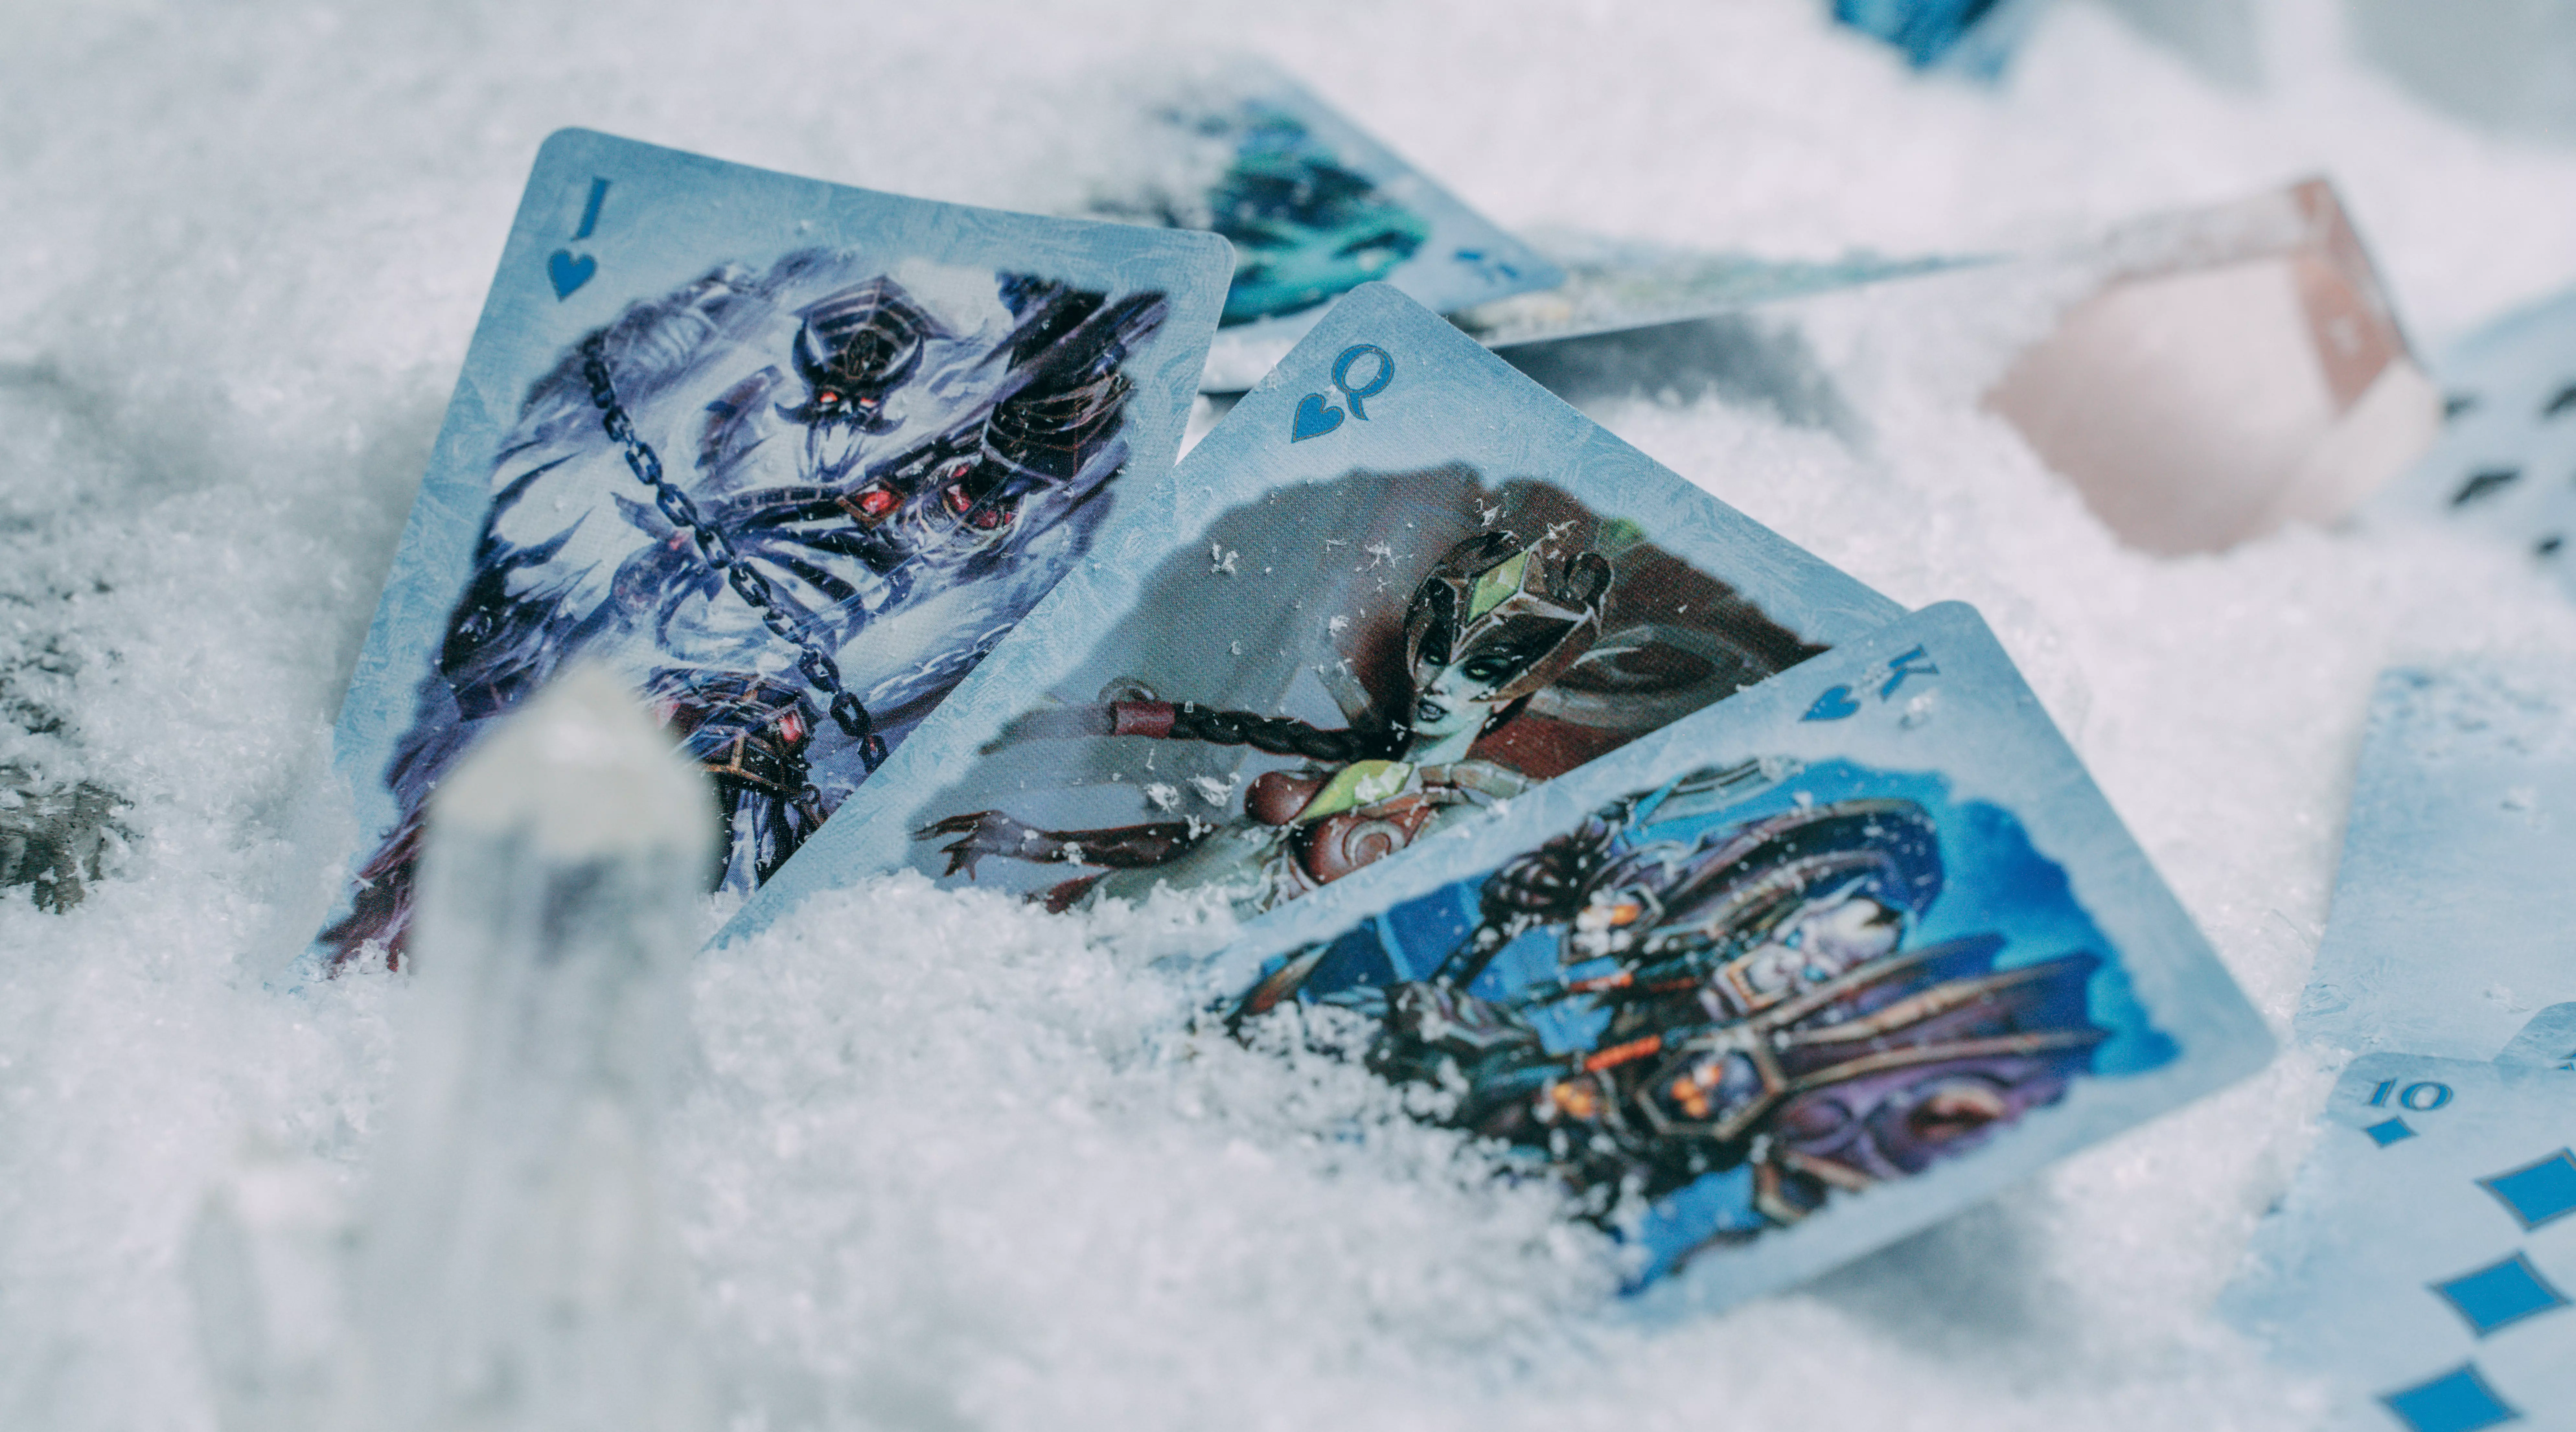 Die Karten einer Bicycle Creatives Bicycle World of Warcraft Wrath of the Lich King Kartenschachtel stecken im Schnee.